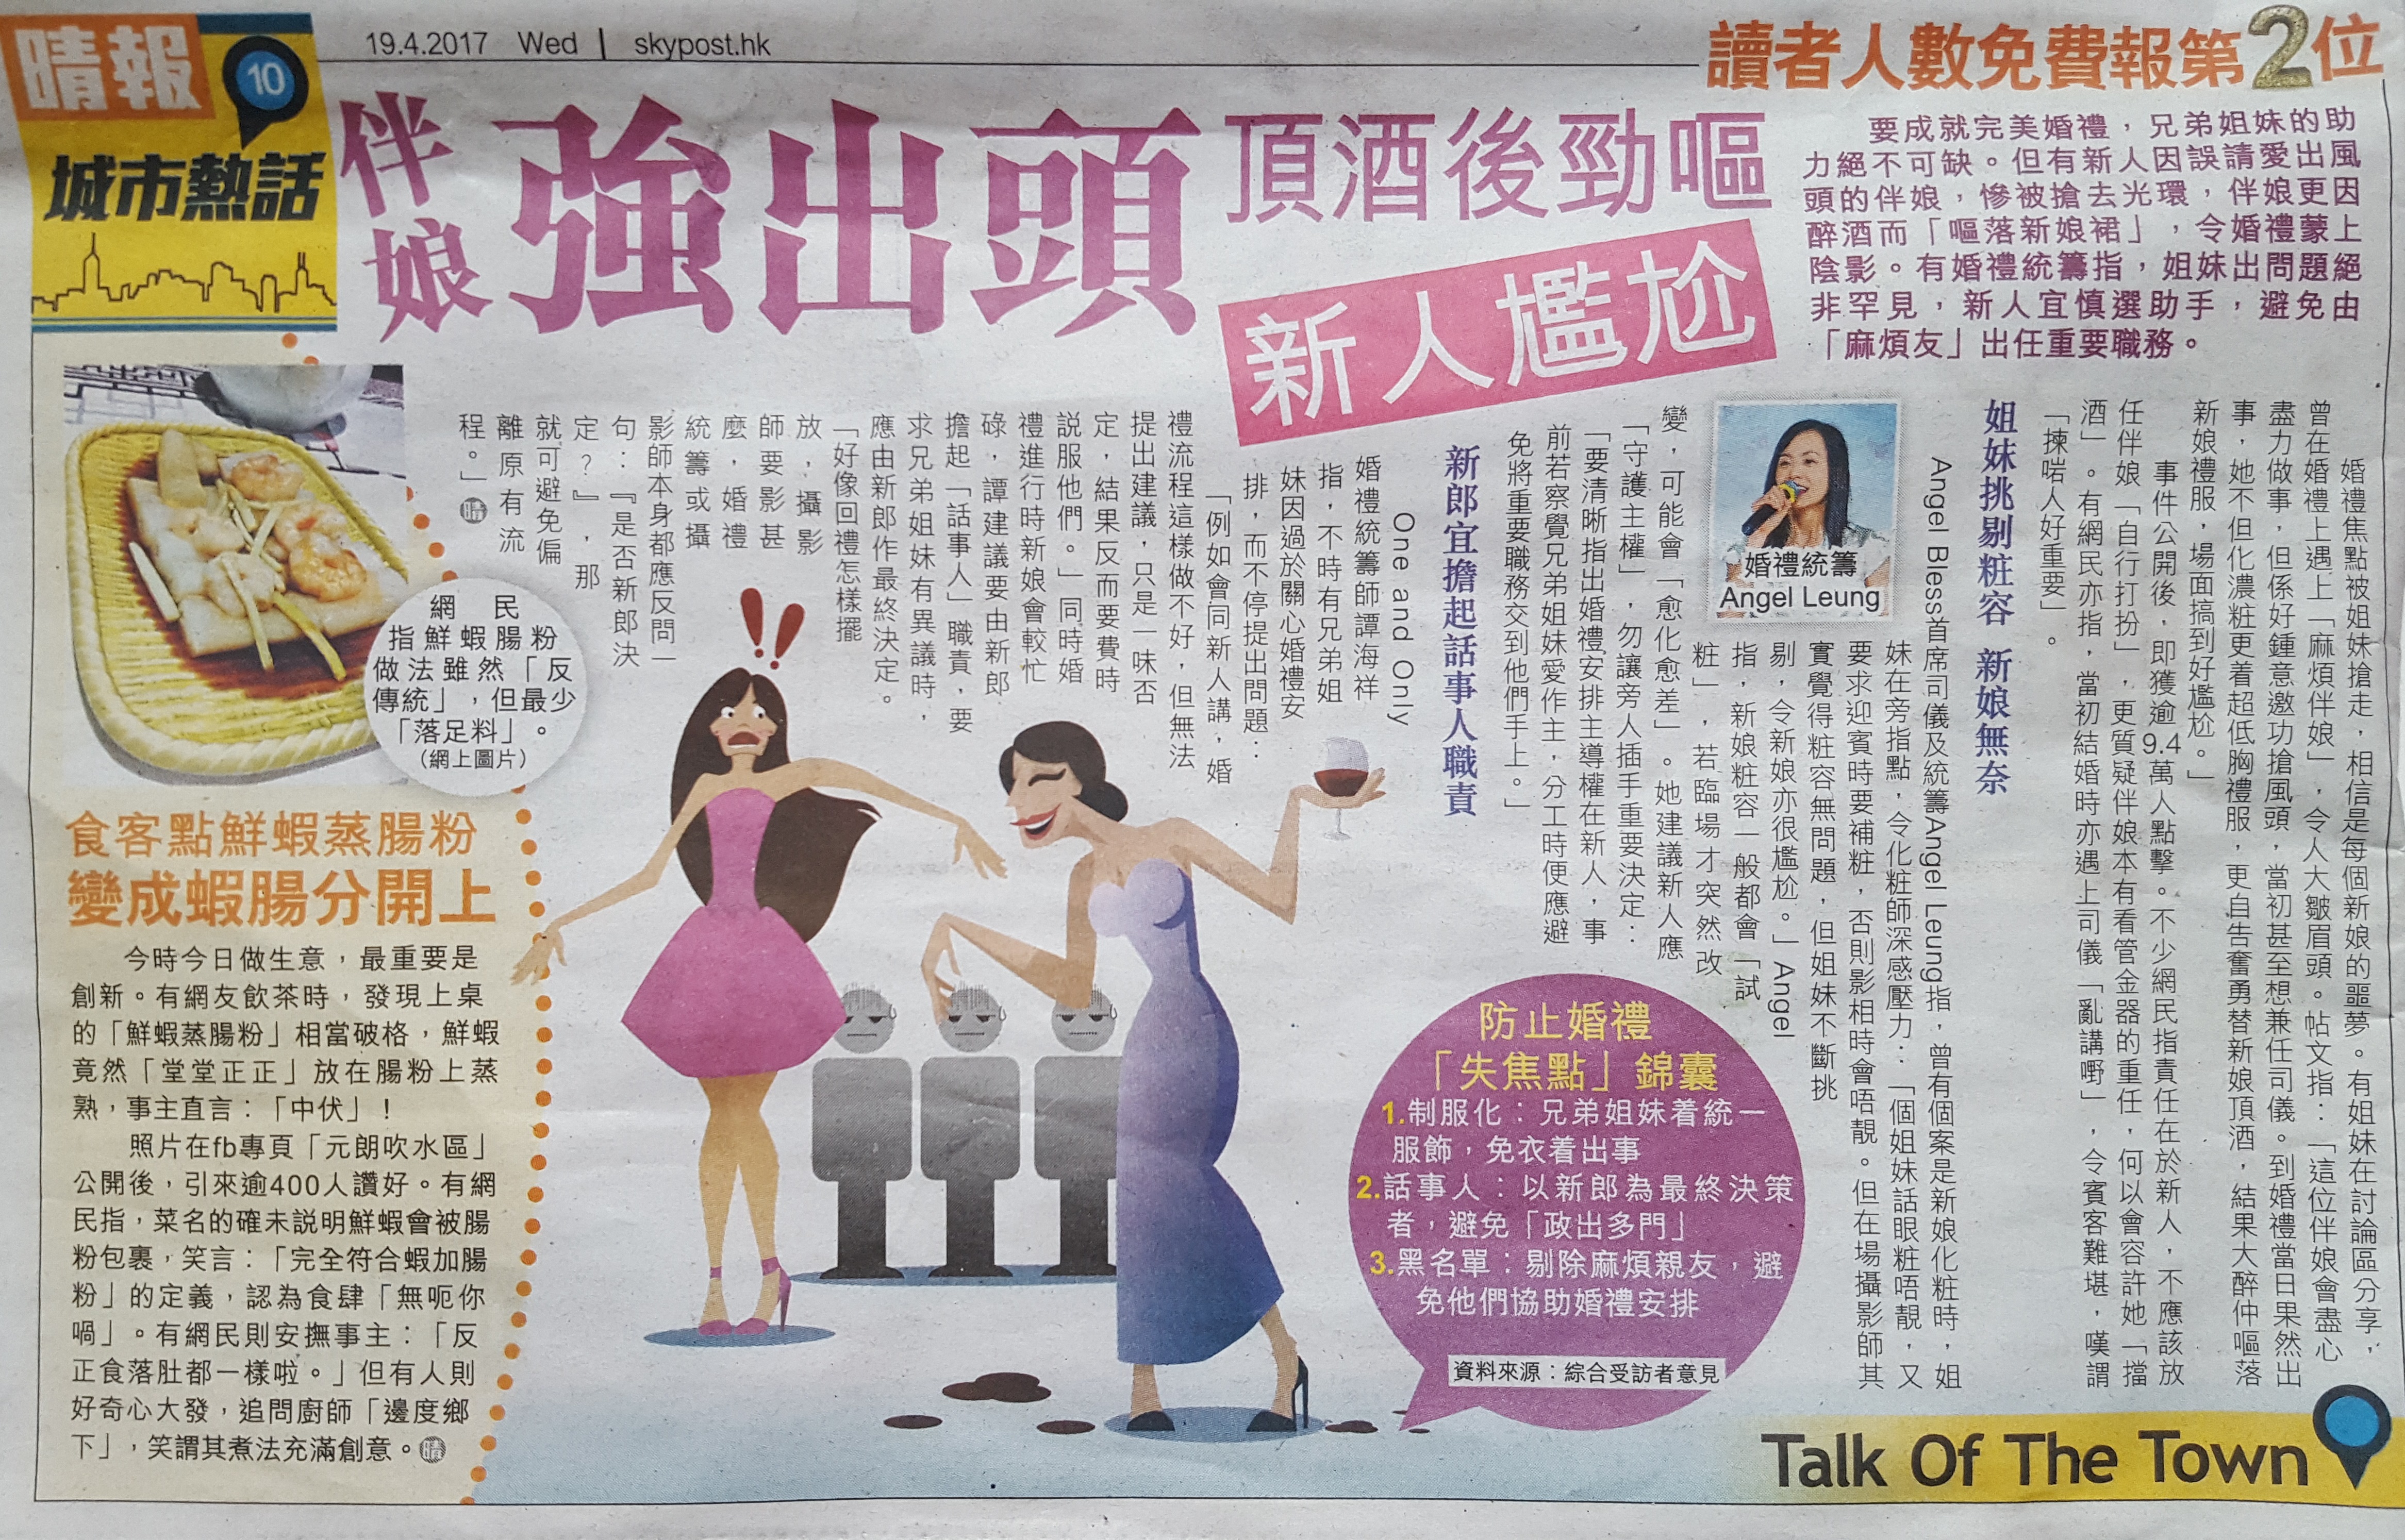 司儀主持人MC Angel Leung之媒體報導: 伴娘強出頭 頂酒後勁嘔 新人尷尬